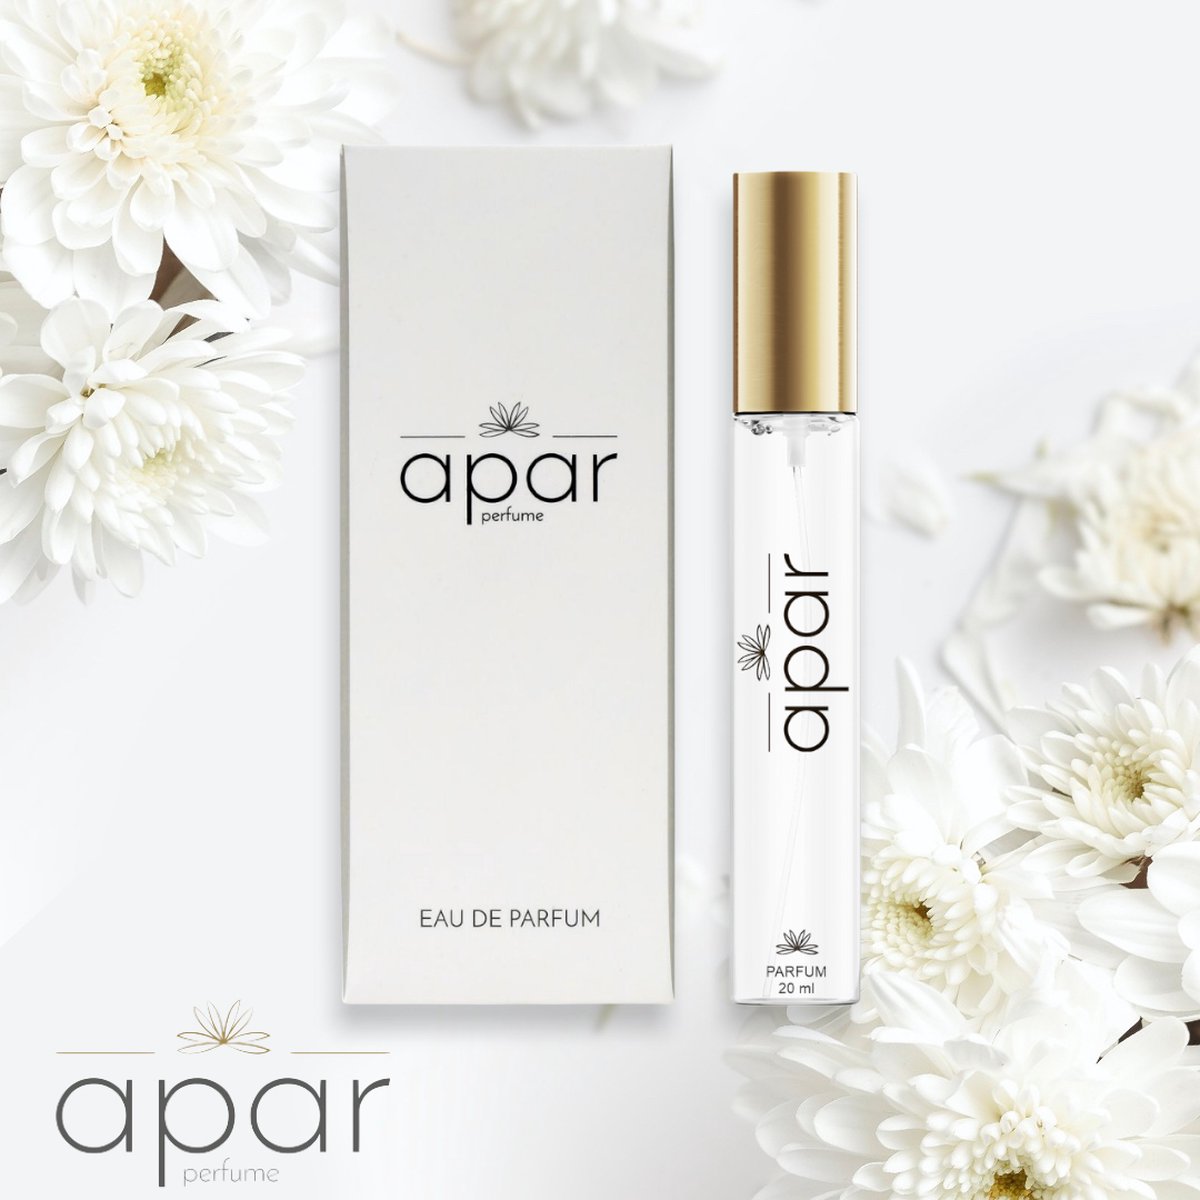 ❤Dure merk geuren voor een eerlijke prijs❤APAR Parfum EDP - 20ml - Nummer F271 Standard -